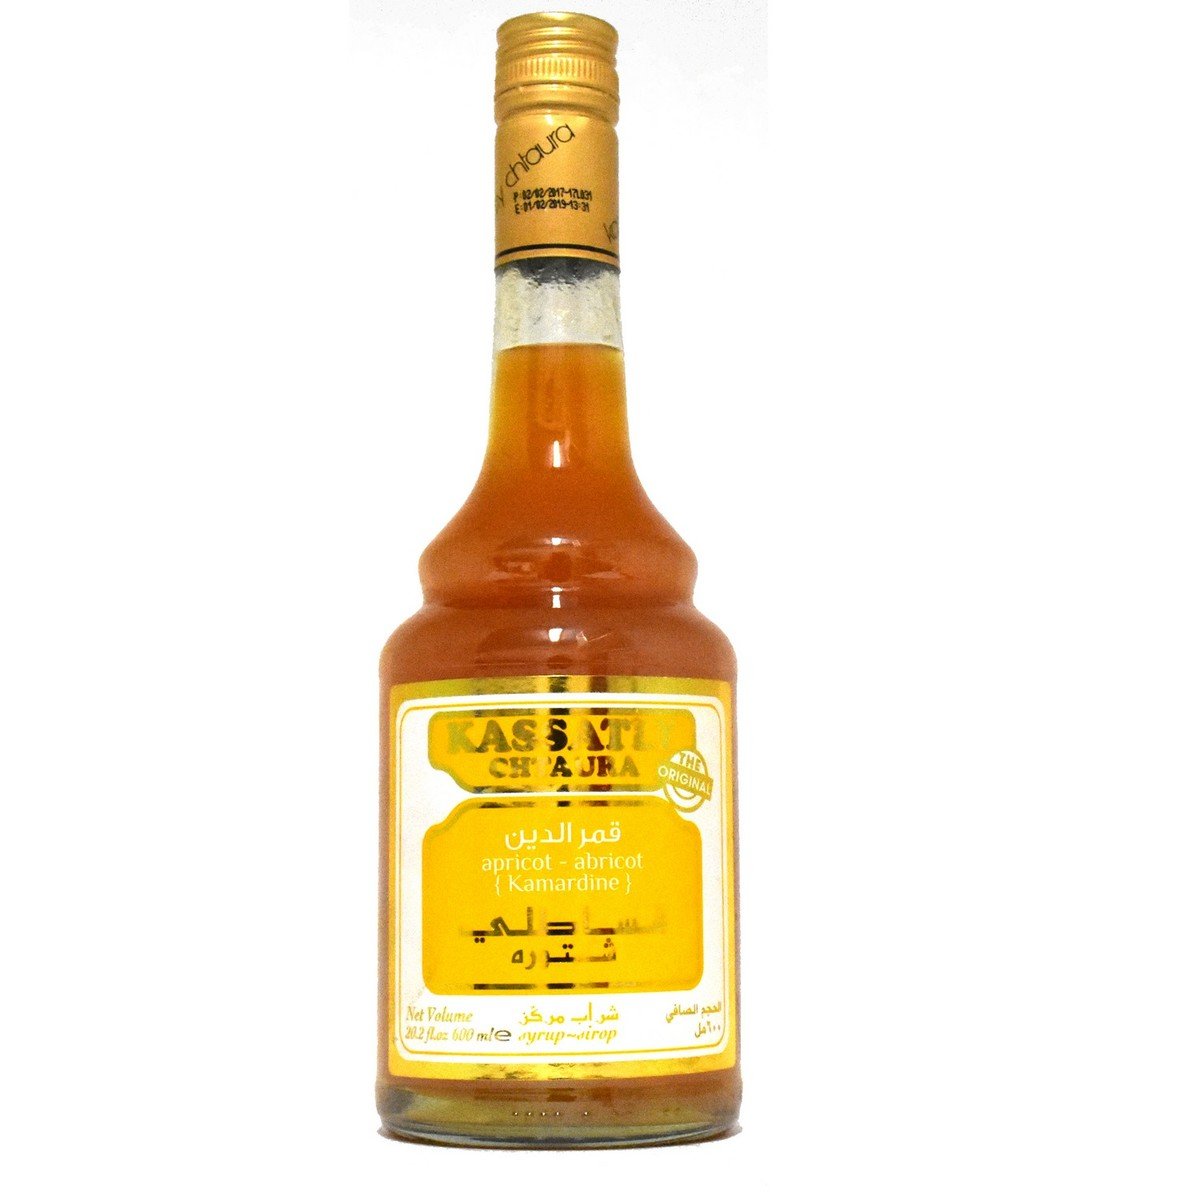 Kassatly Chtaura Apricot Syrup 600ml